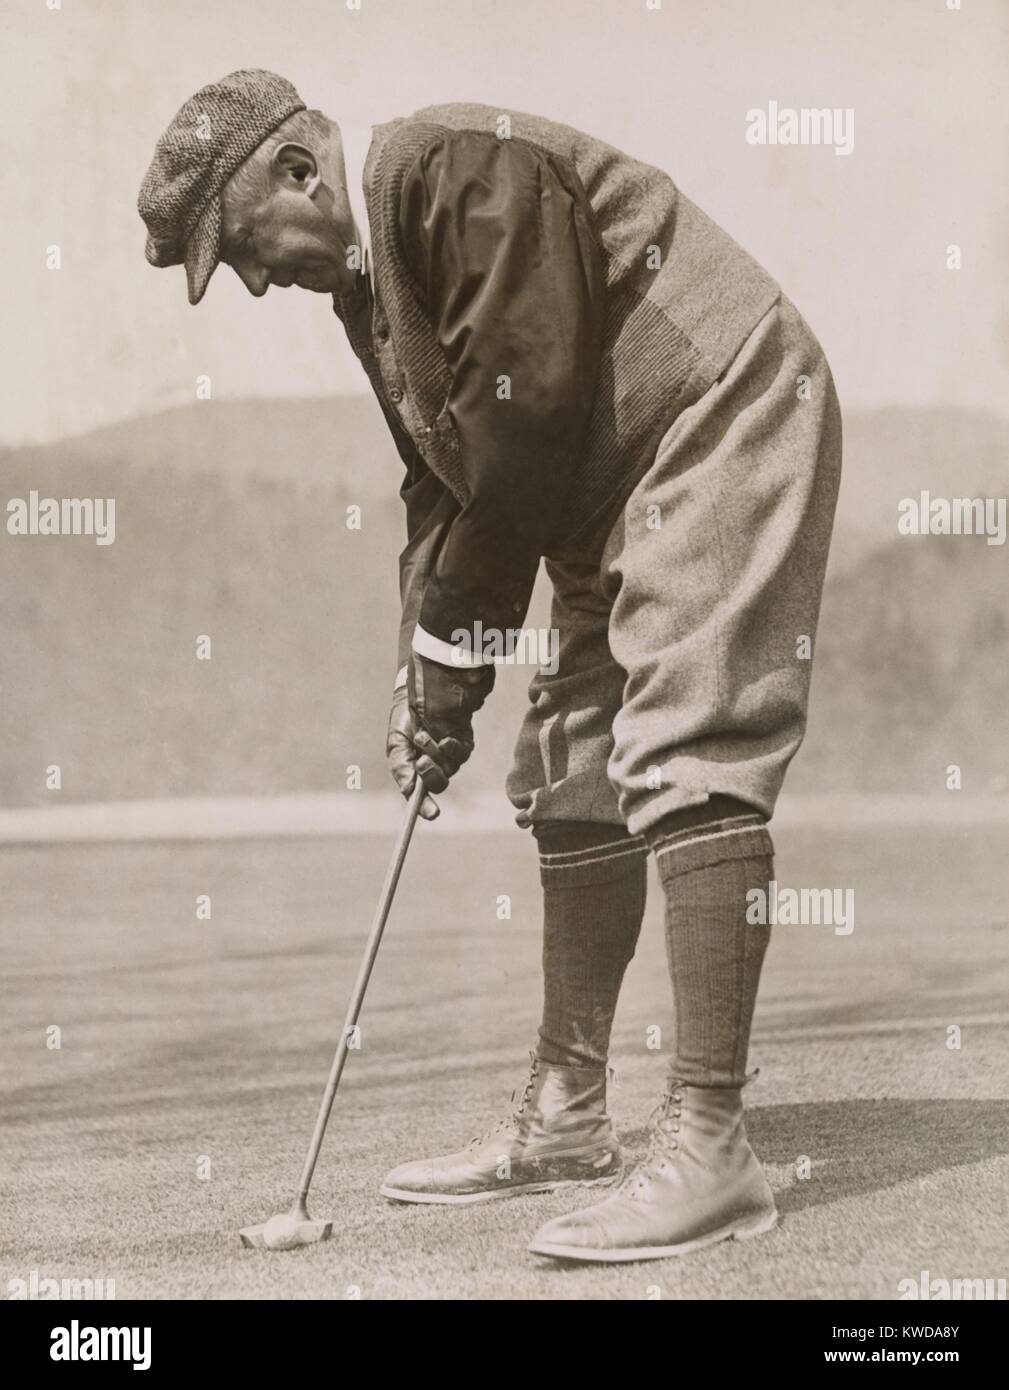 Charles M. Schwab le golf à White Sulphur Springs, West Virginia, 1922. Il a fait sa fortune en tant que responsable de la construction et de Bethléem Steel Company de 1903 fournit l'acier pour la construction navale, des gratte-ciel, et la Seconde Guerre mondiale (1 BSLOC 2016 8 11) Banque D'Images